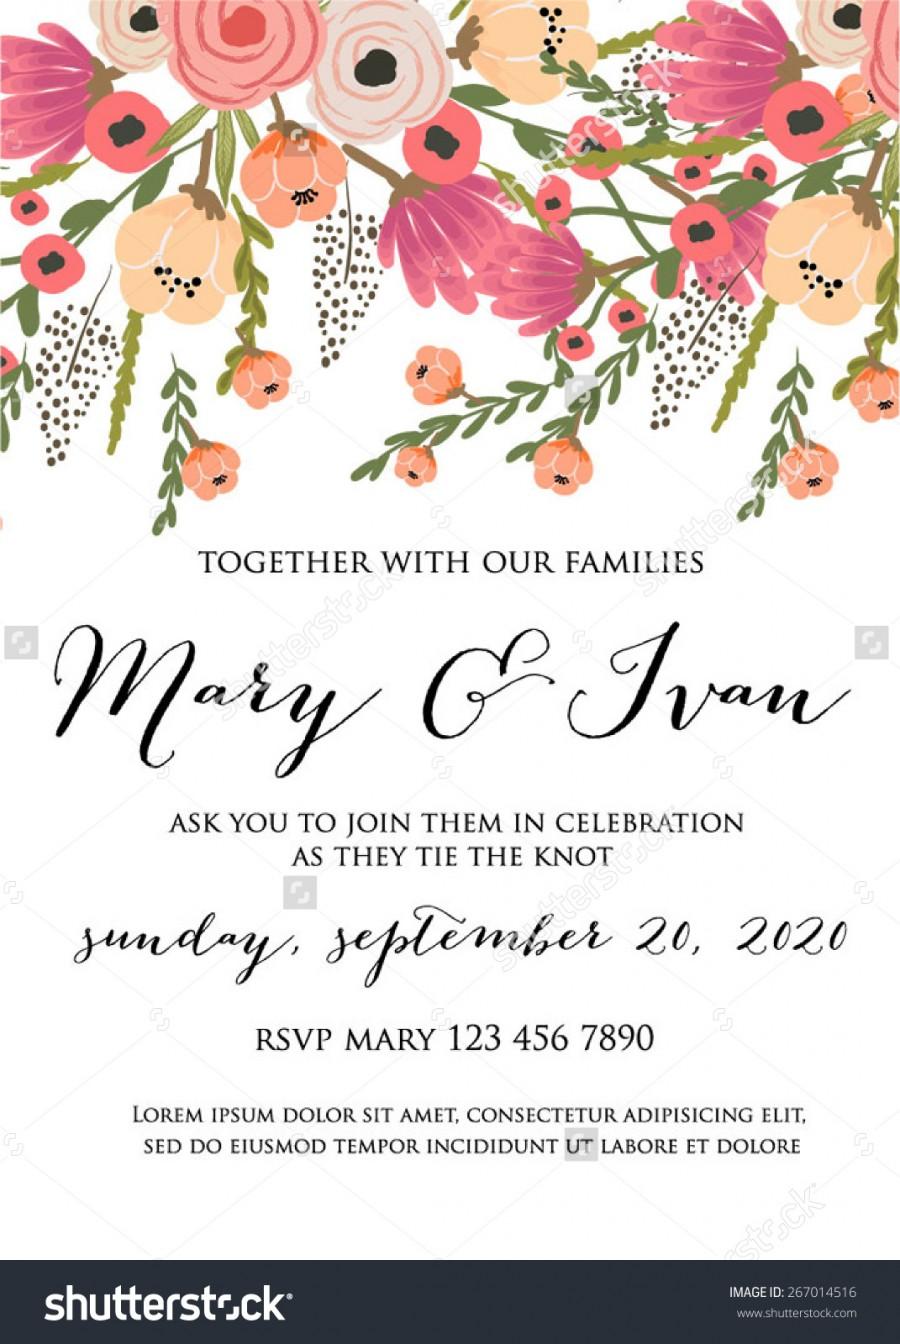 Wedding - Floral wedding Invitation